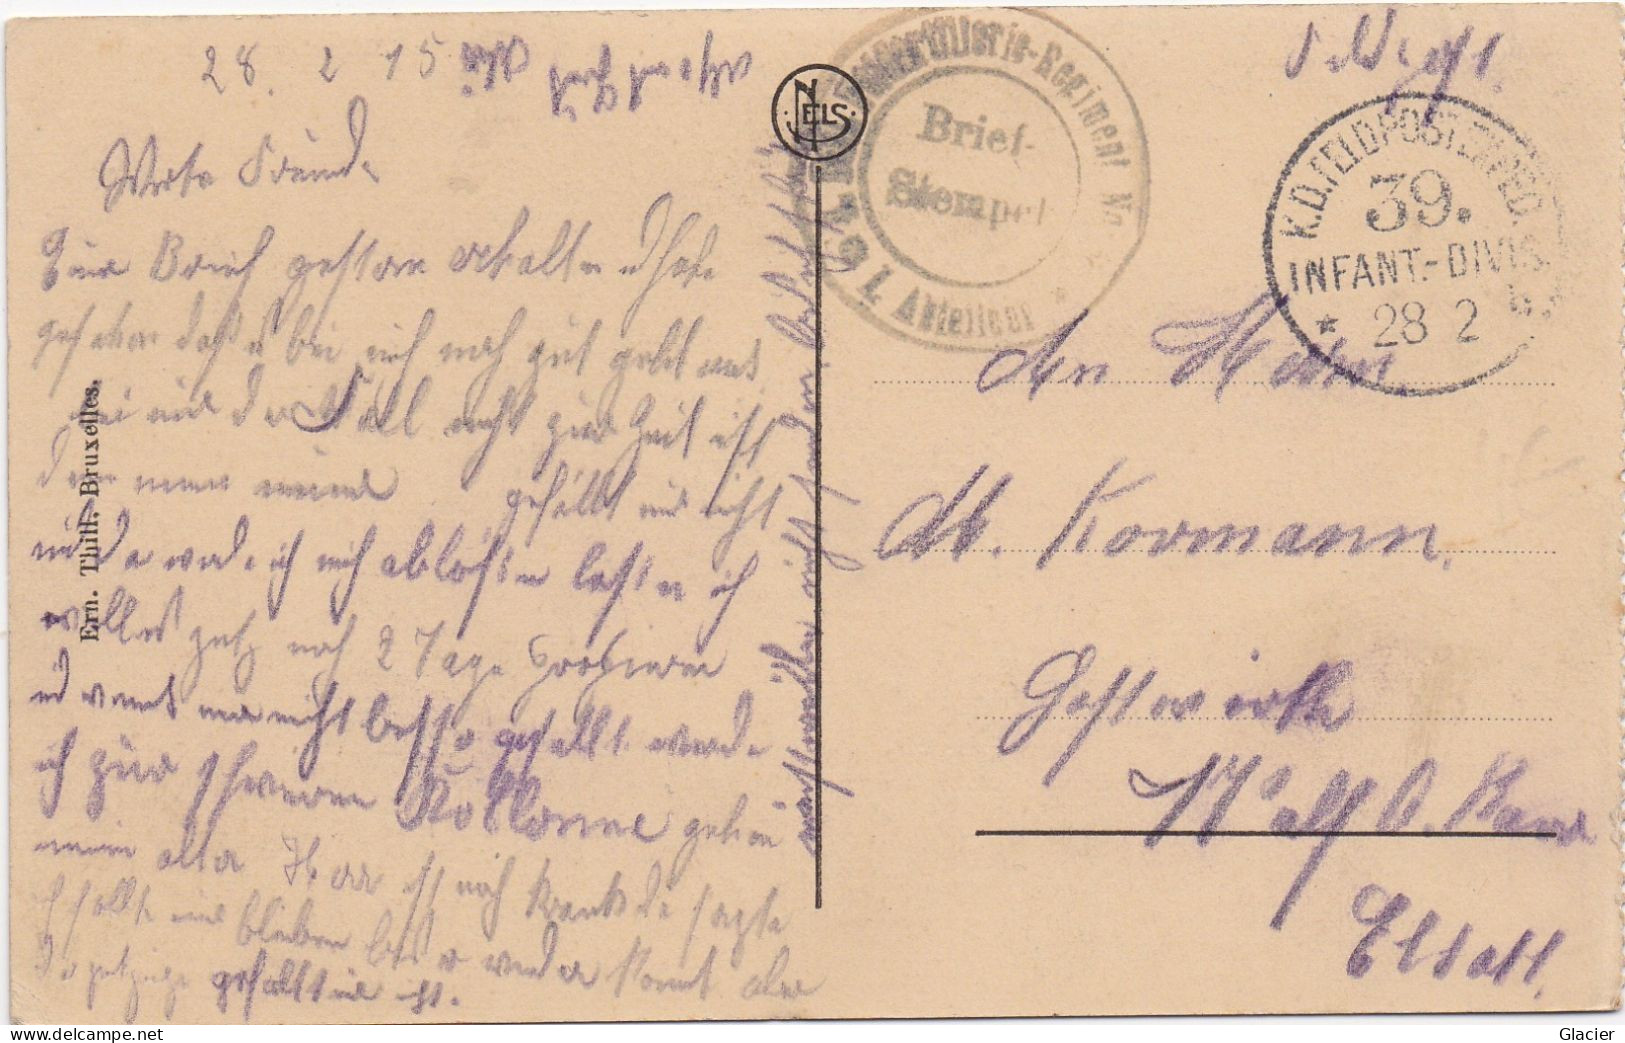 Deutsche Feldpost 1 Weltkrieg - 39 Inf. Div. 28-2-1915 - Karte Ostende - Feldpost (franchigia Postale)